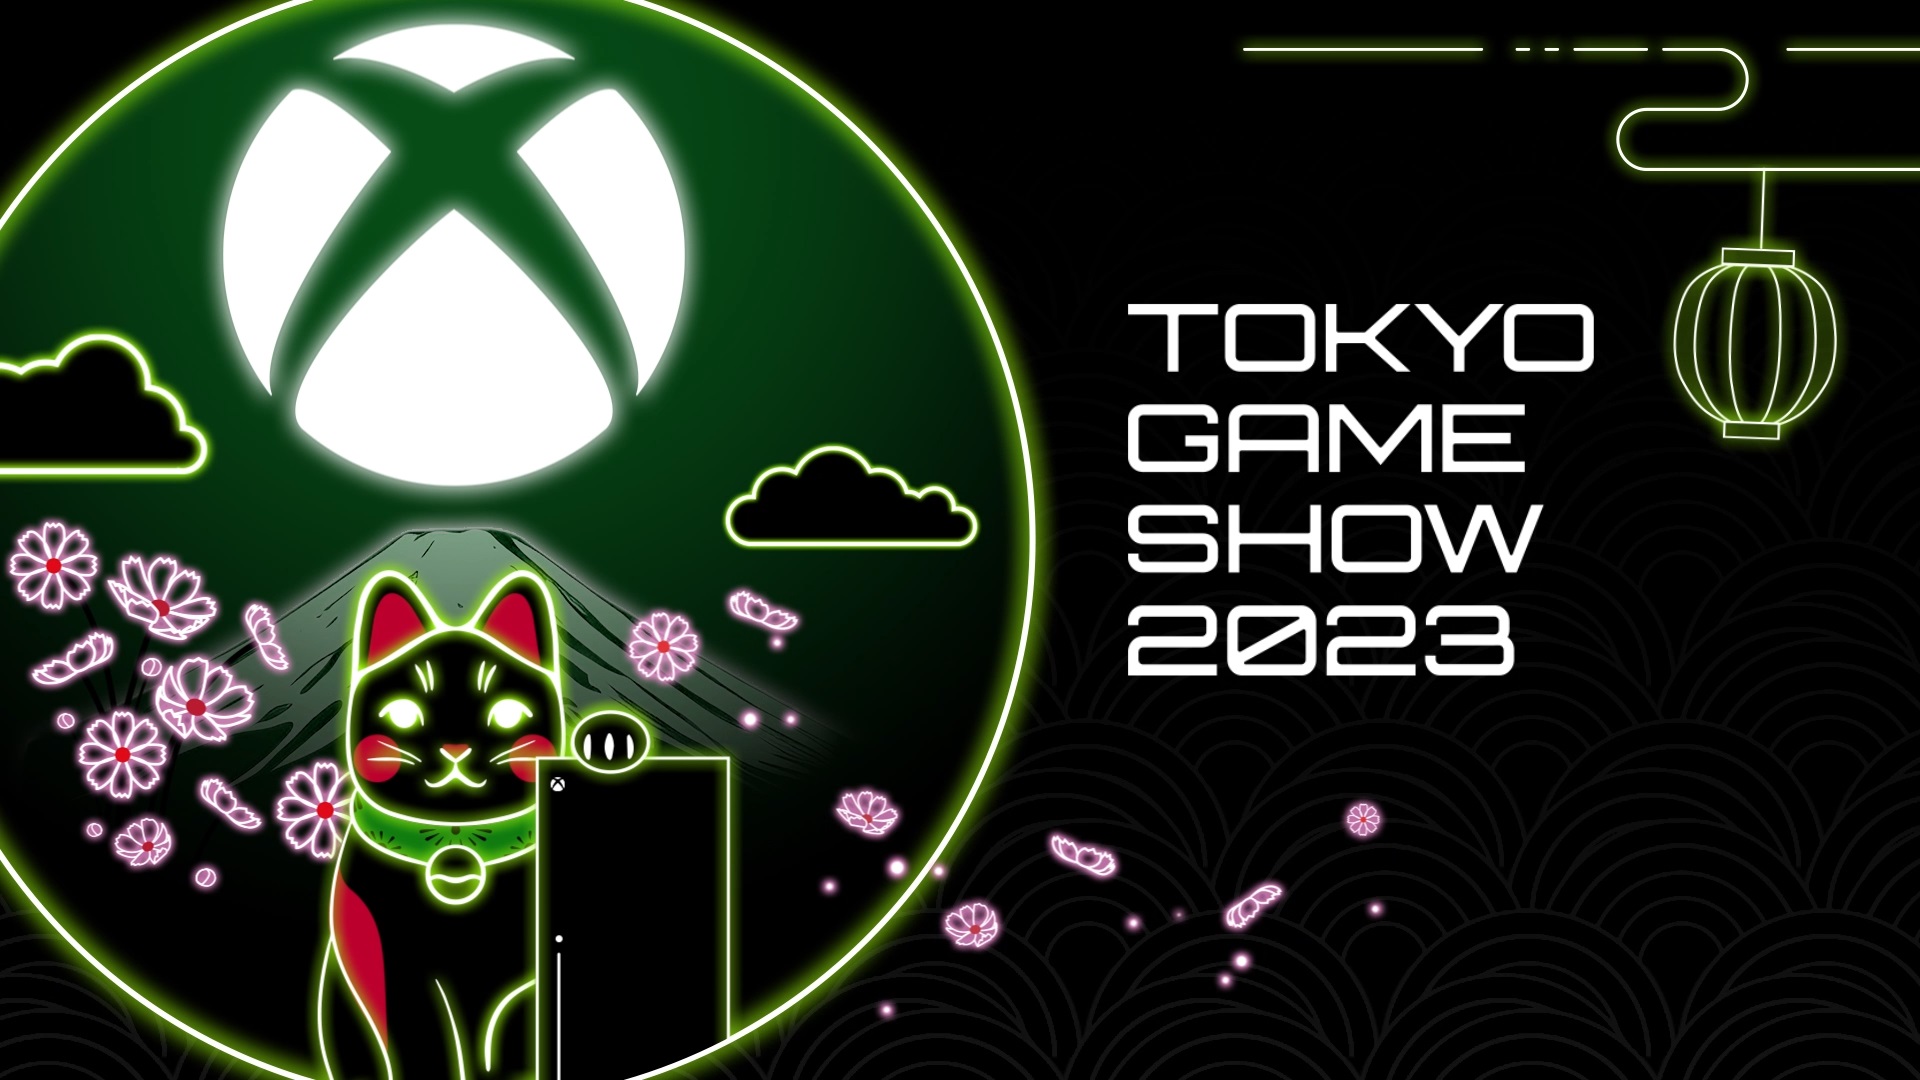 Xbox東京電玩展直播計劃 提供亞洲創作者的游戲信息